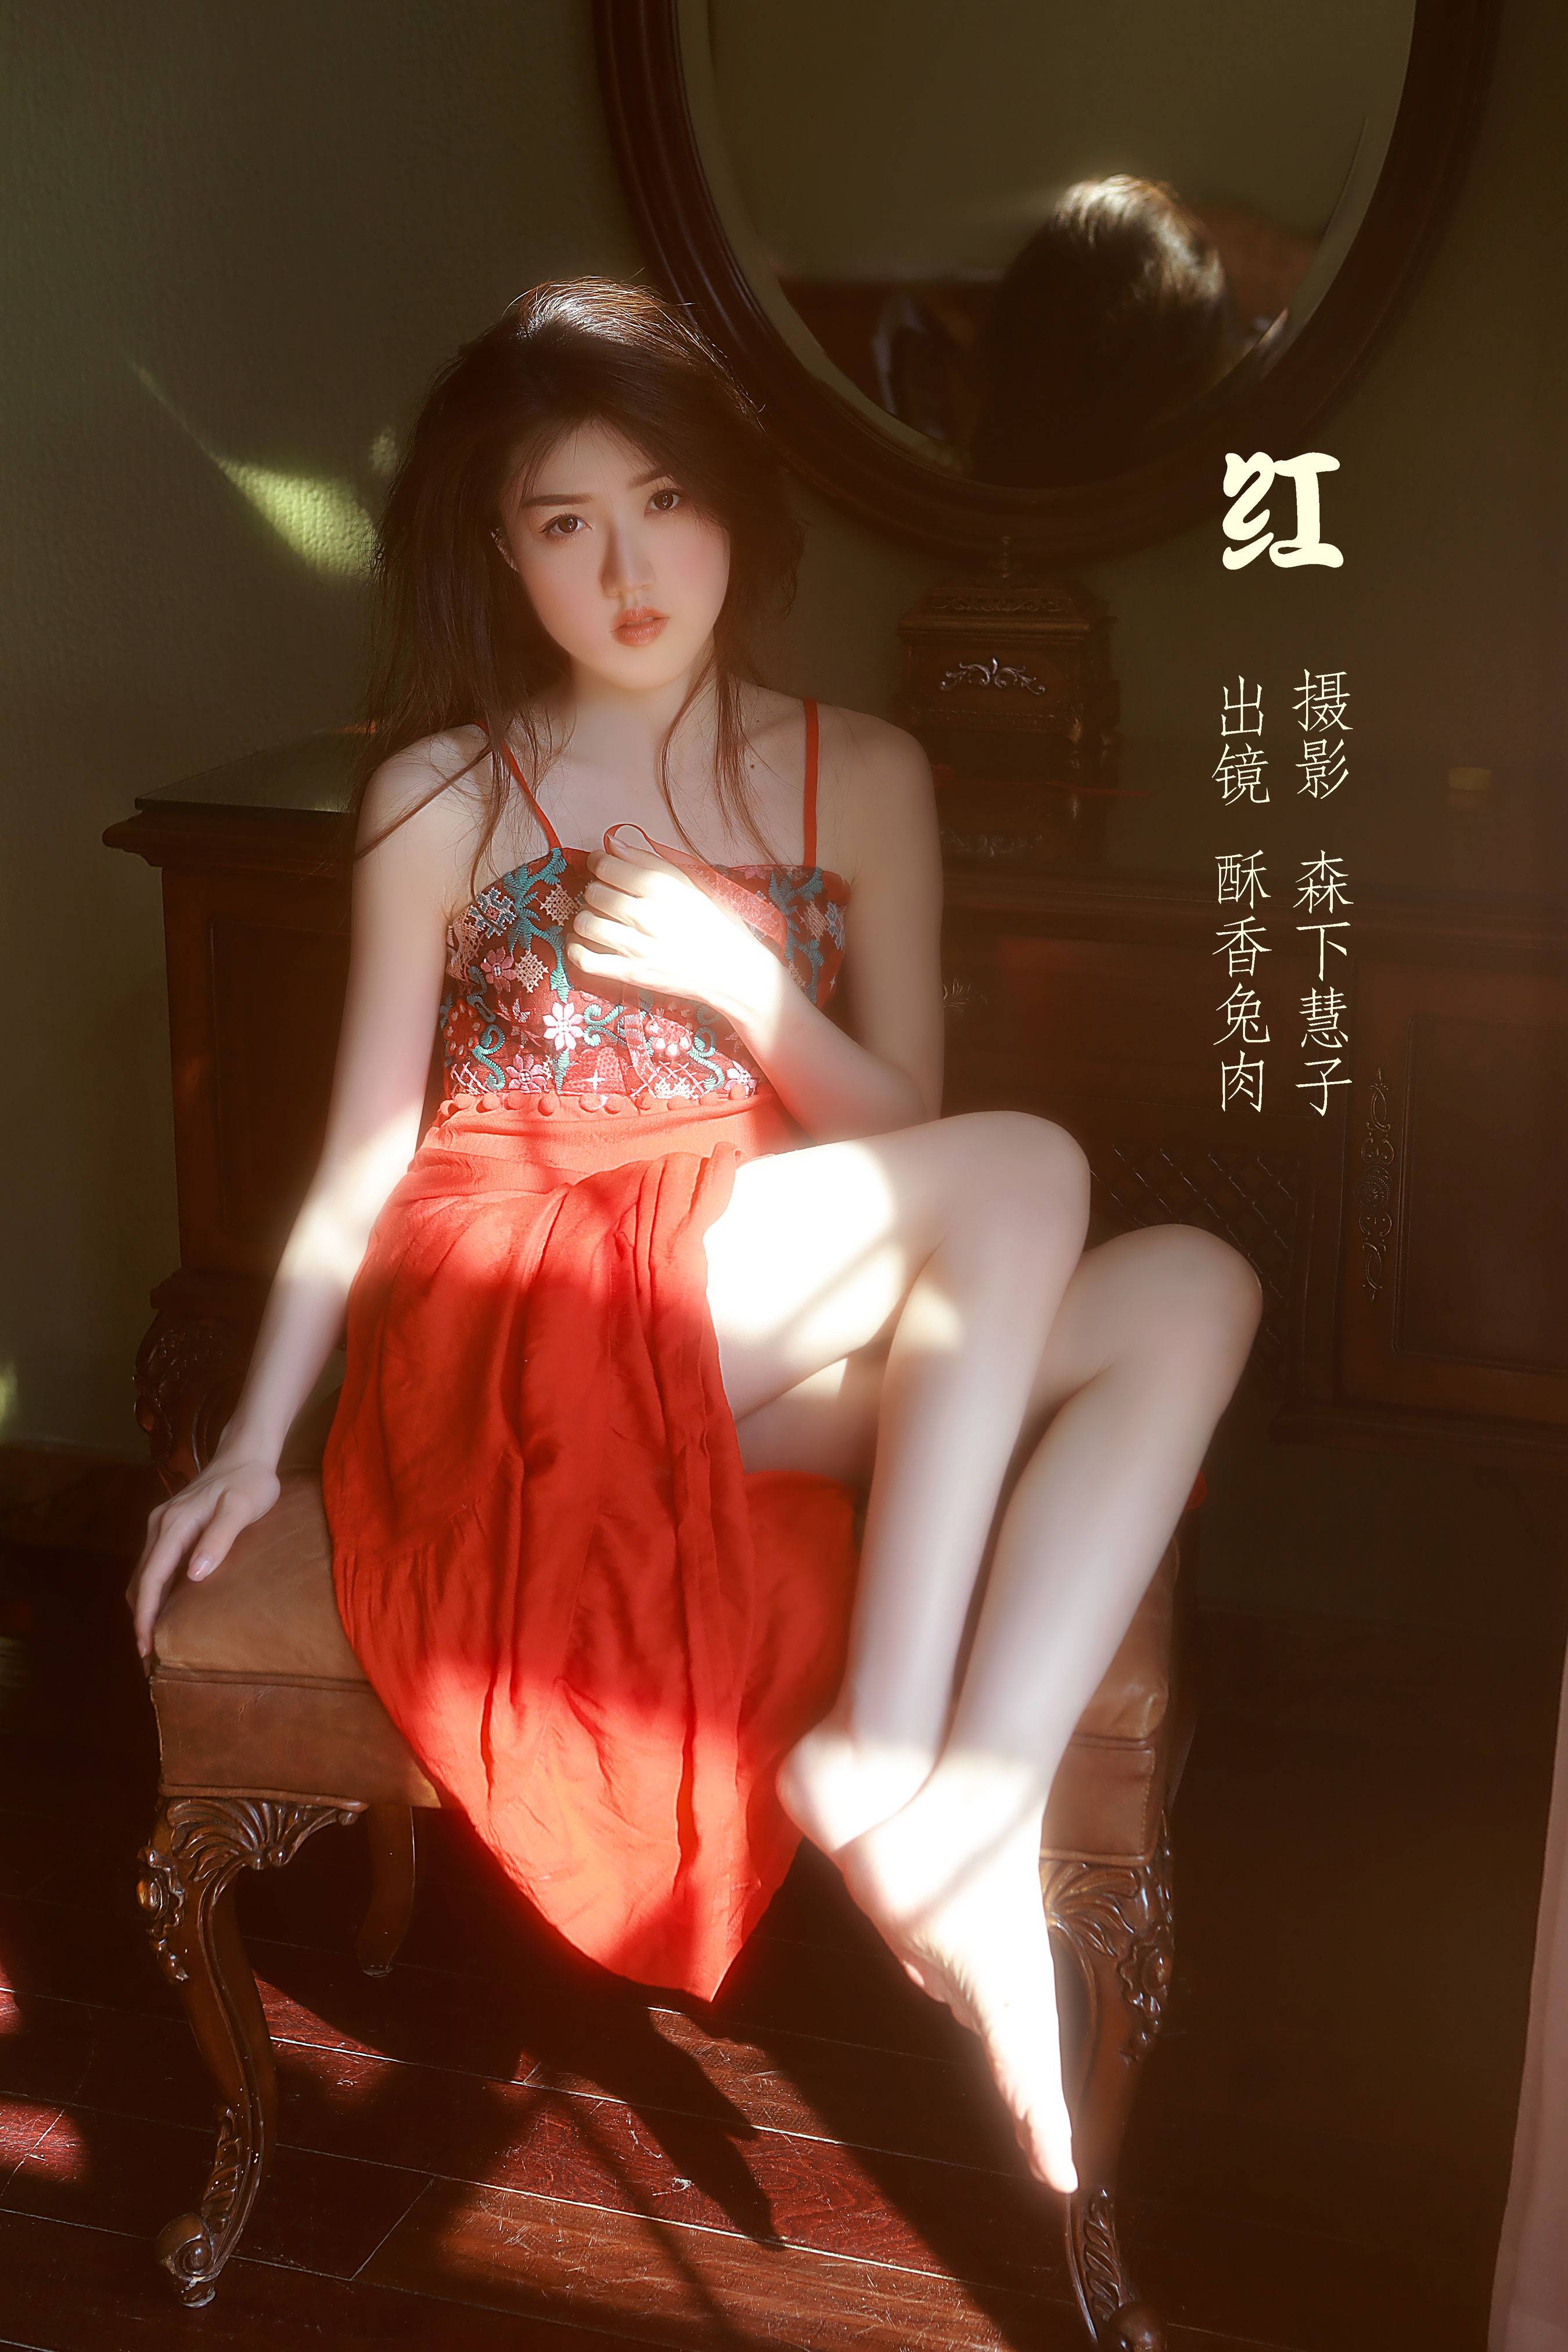 红 唯美 光影 模特 人像 摄影作品&YiTuYu艺图语-1